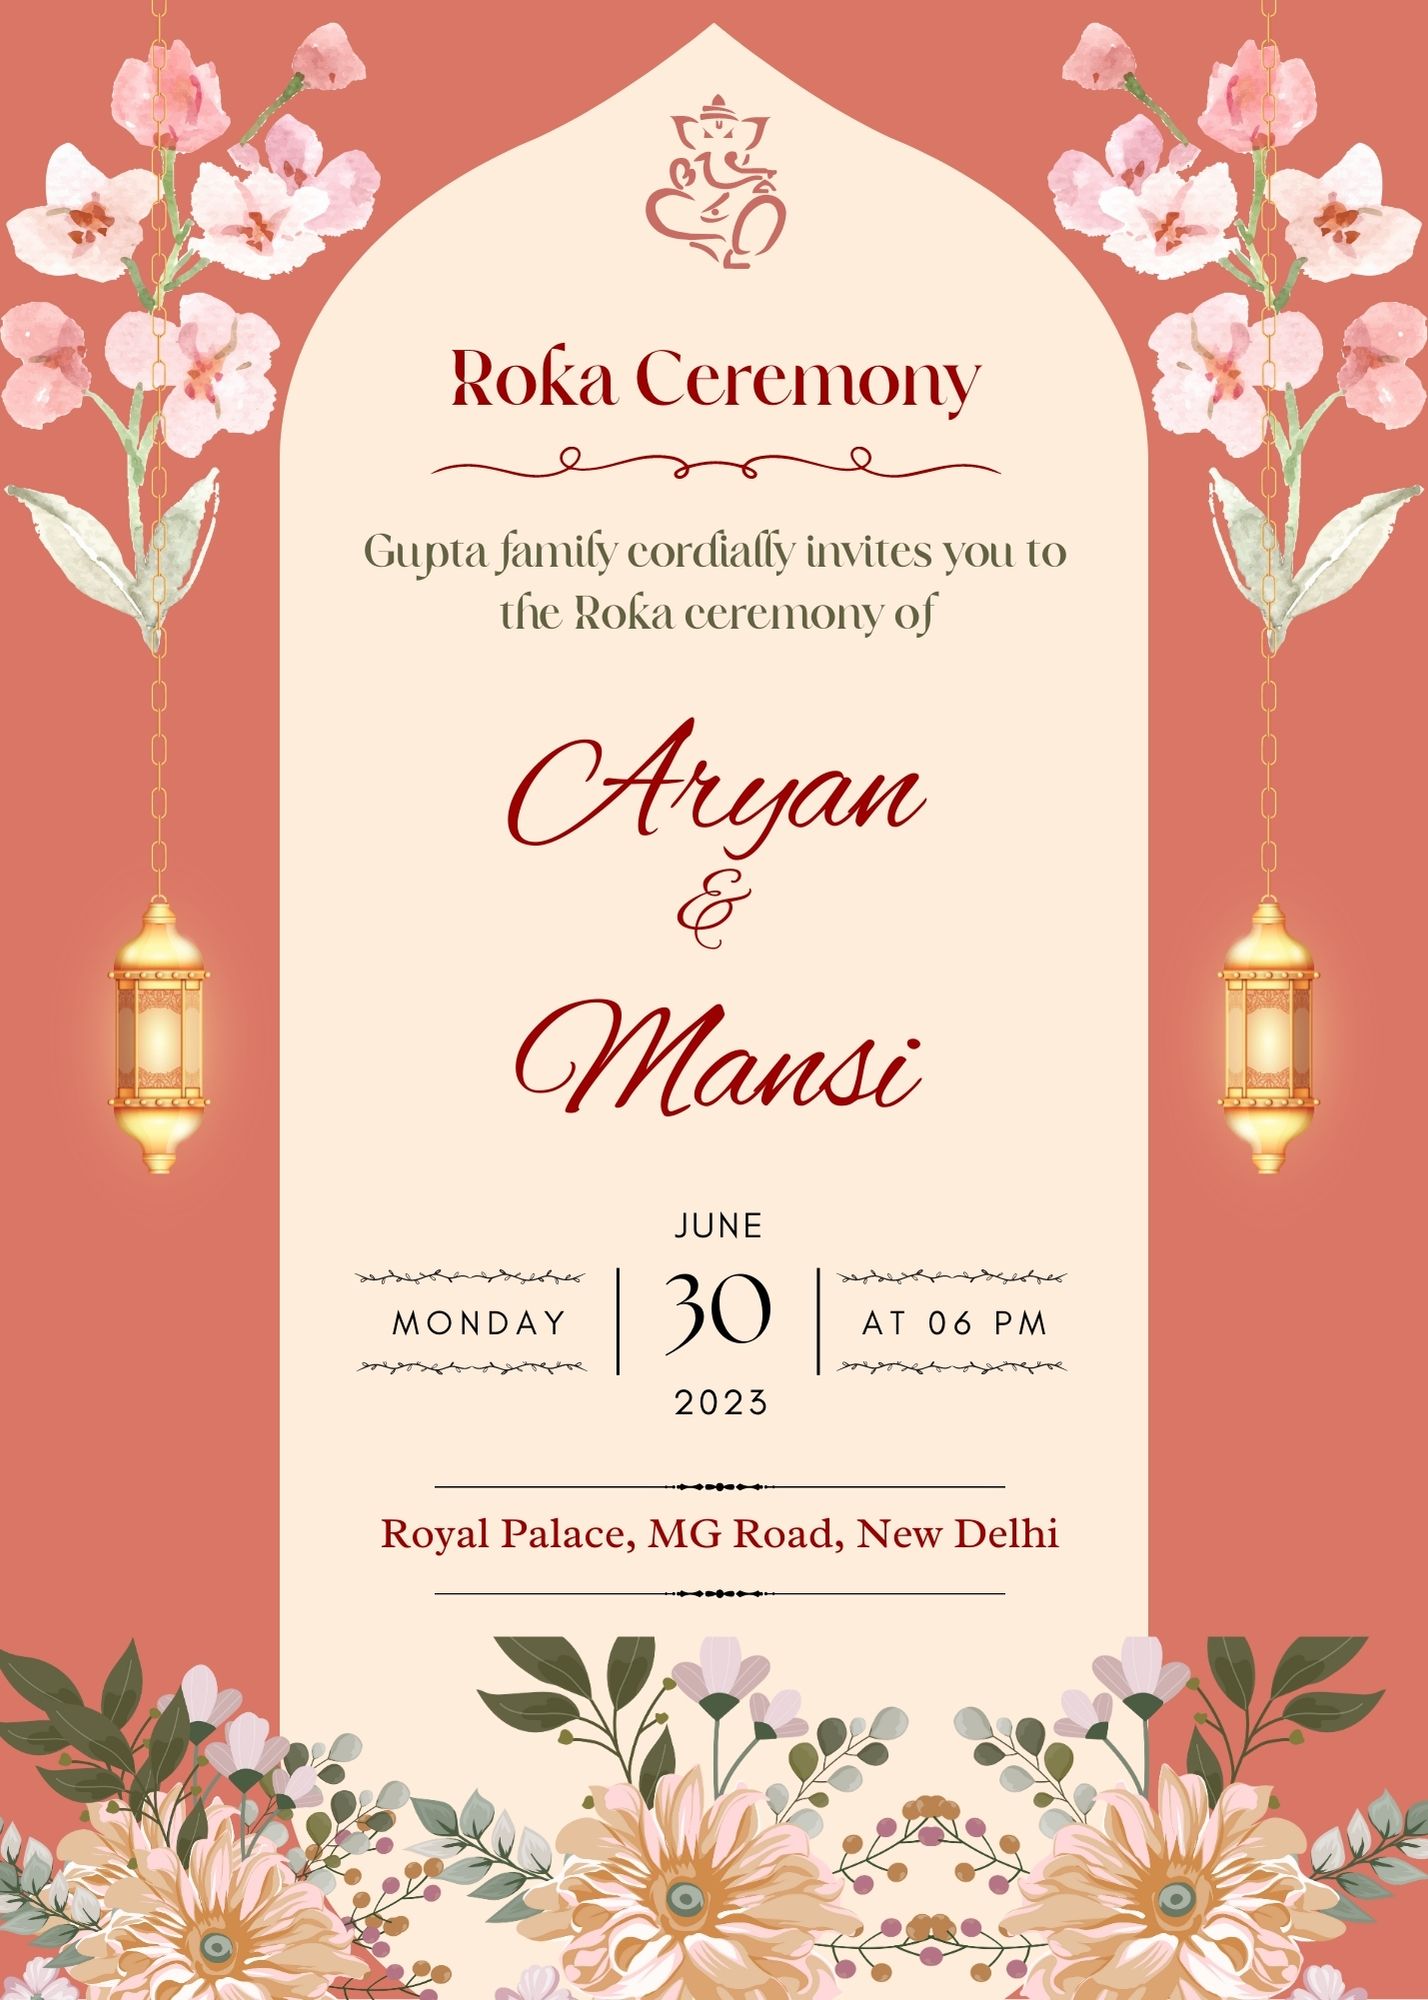 Roka ceremony invitation card lovely